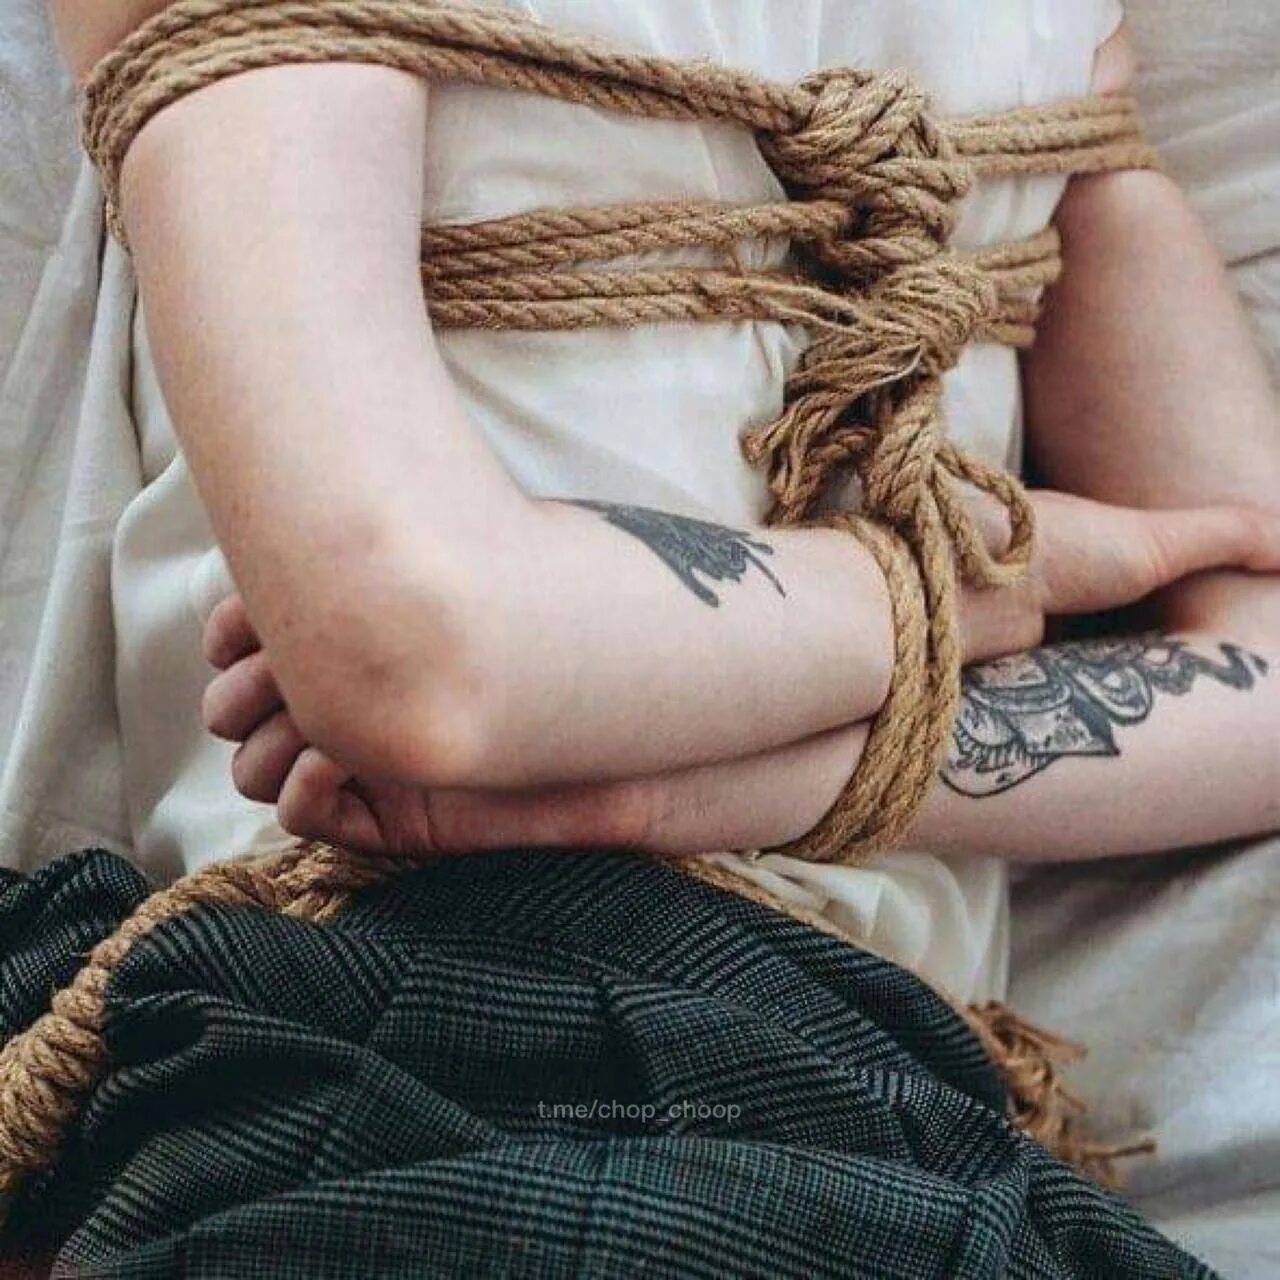 Видео где девушку завязывают. Веревка в руке. Связанные руки. Веревка для связывания. Связанные веревкой девушки.